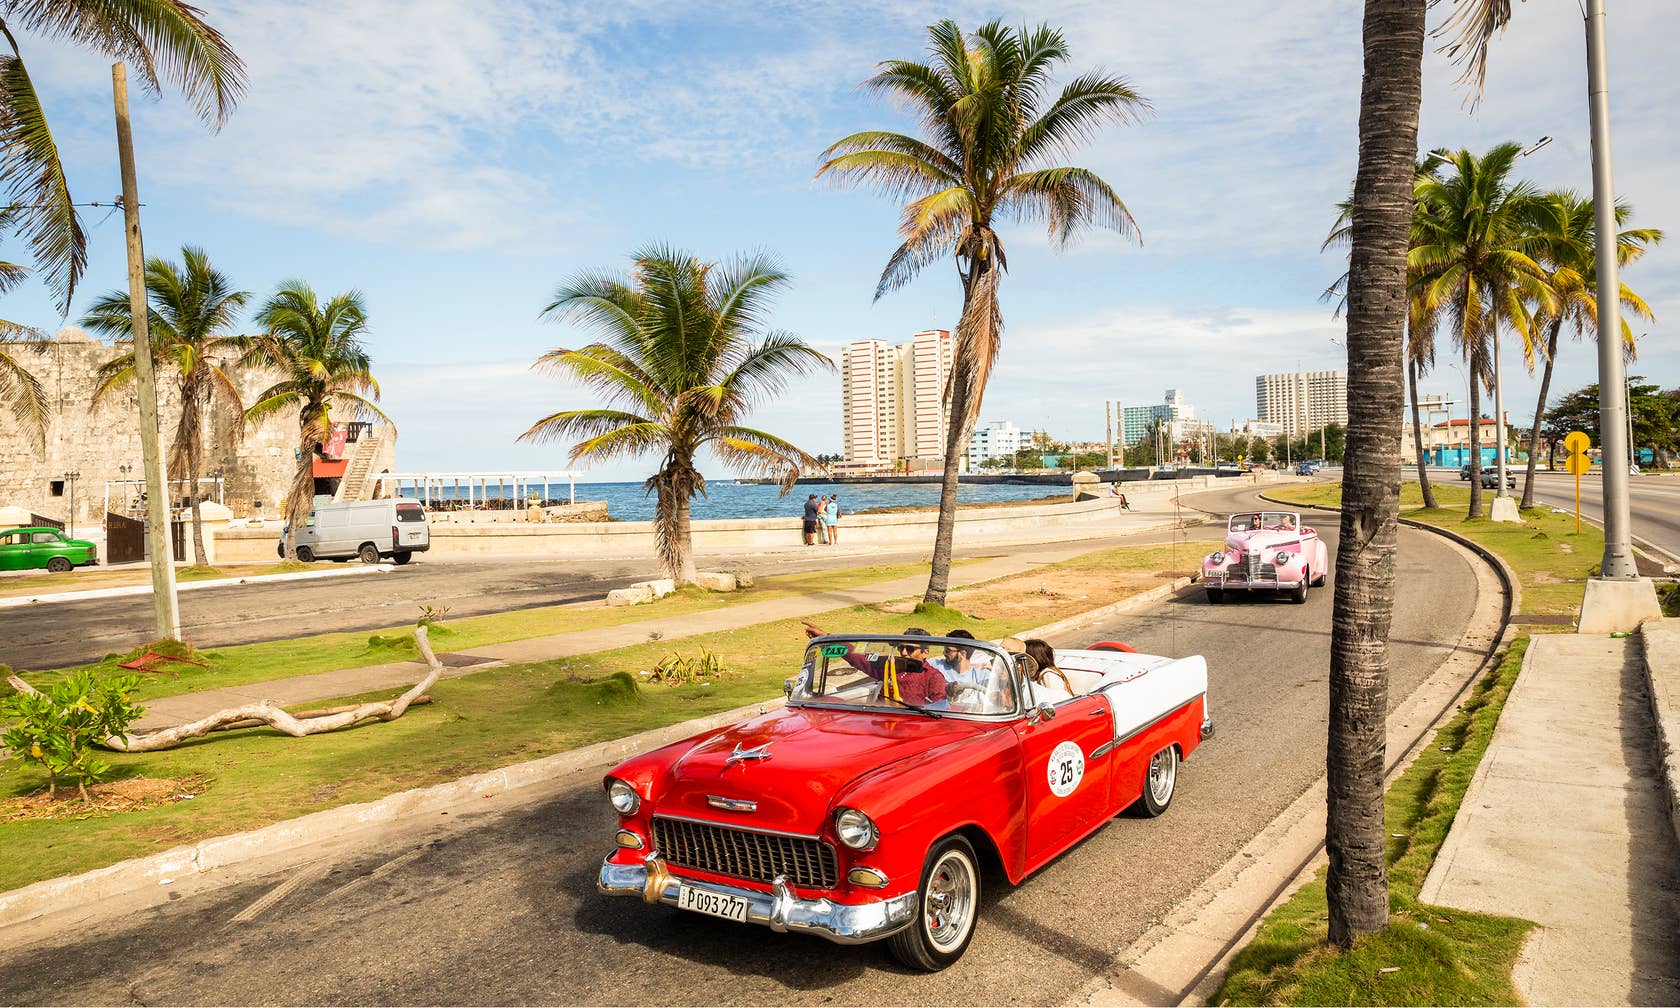 Affitti per le vacanze a Cuba